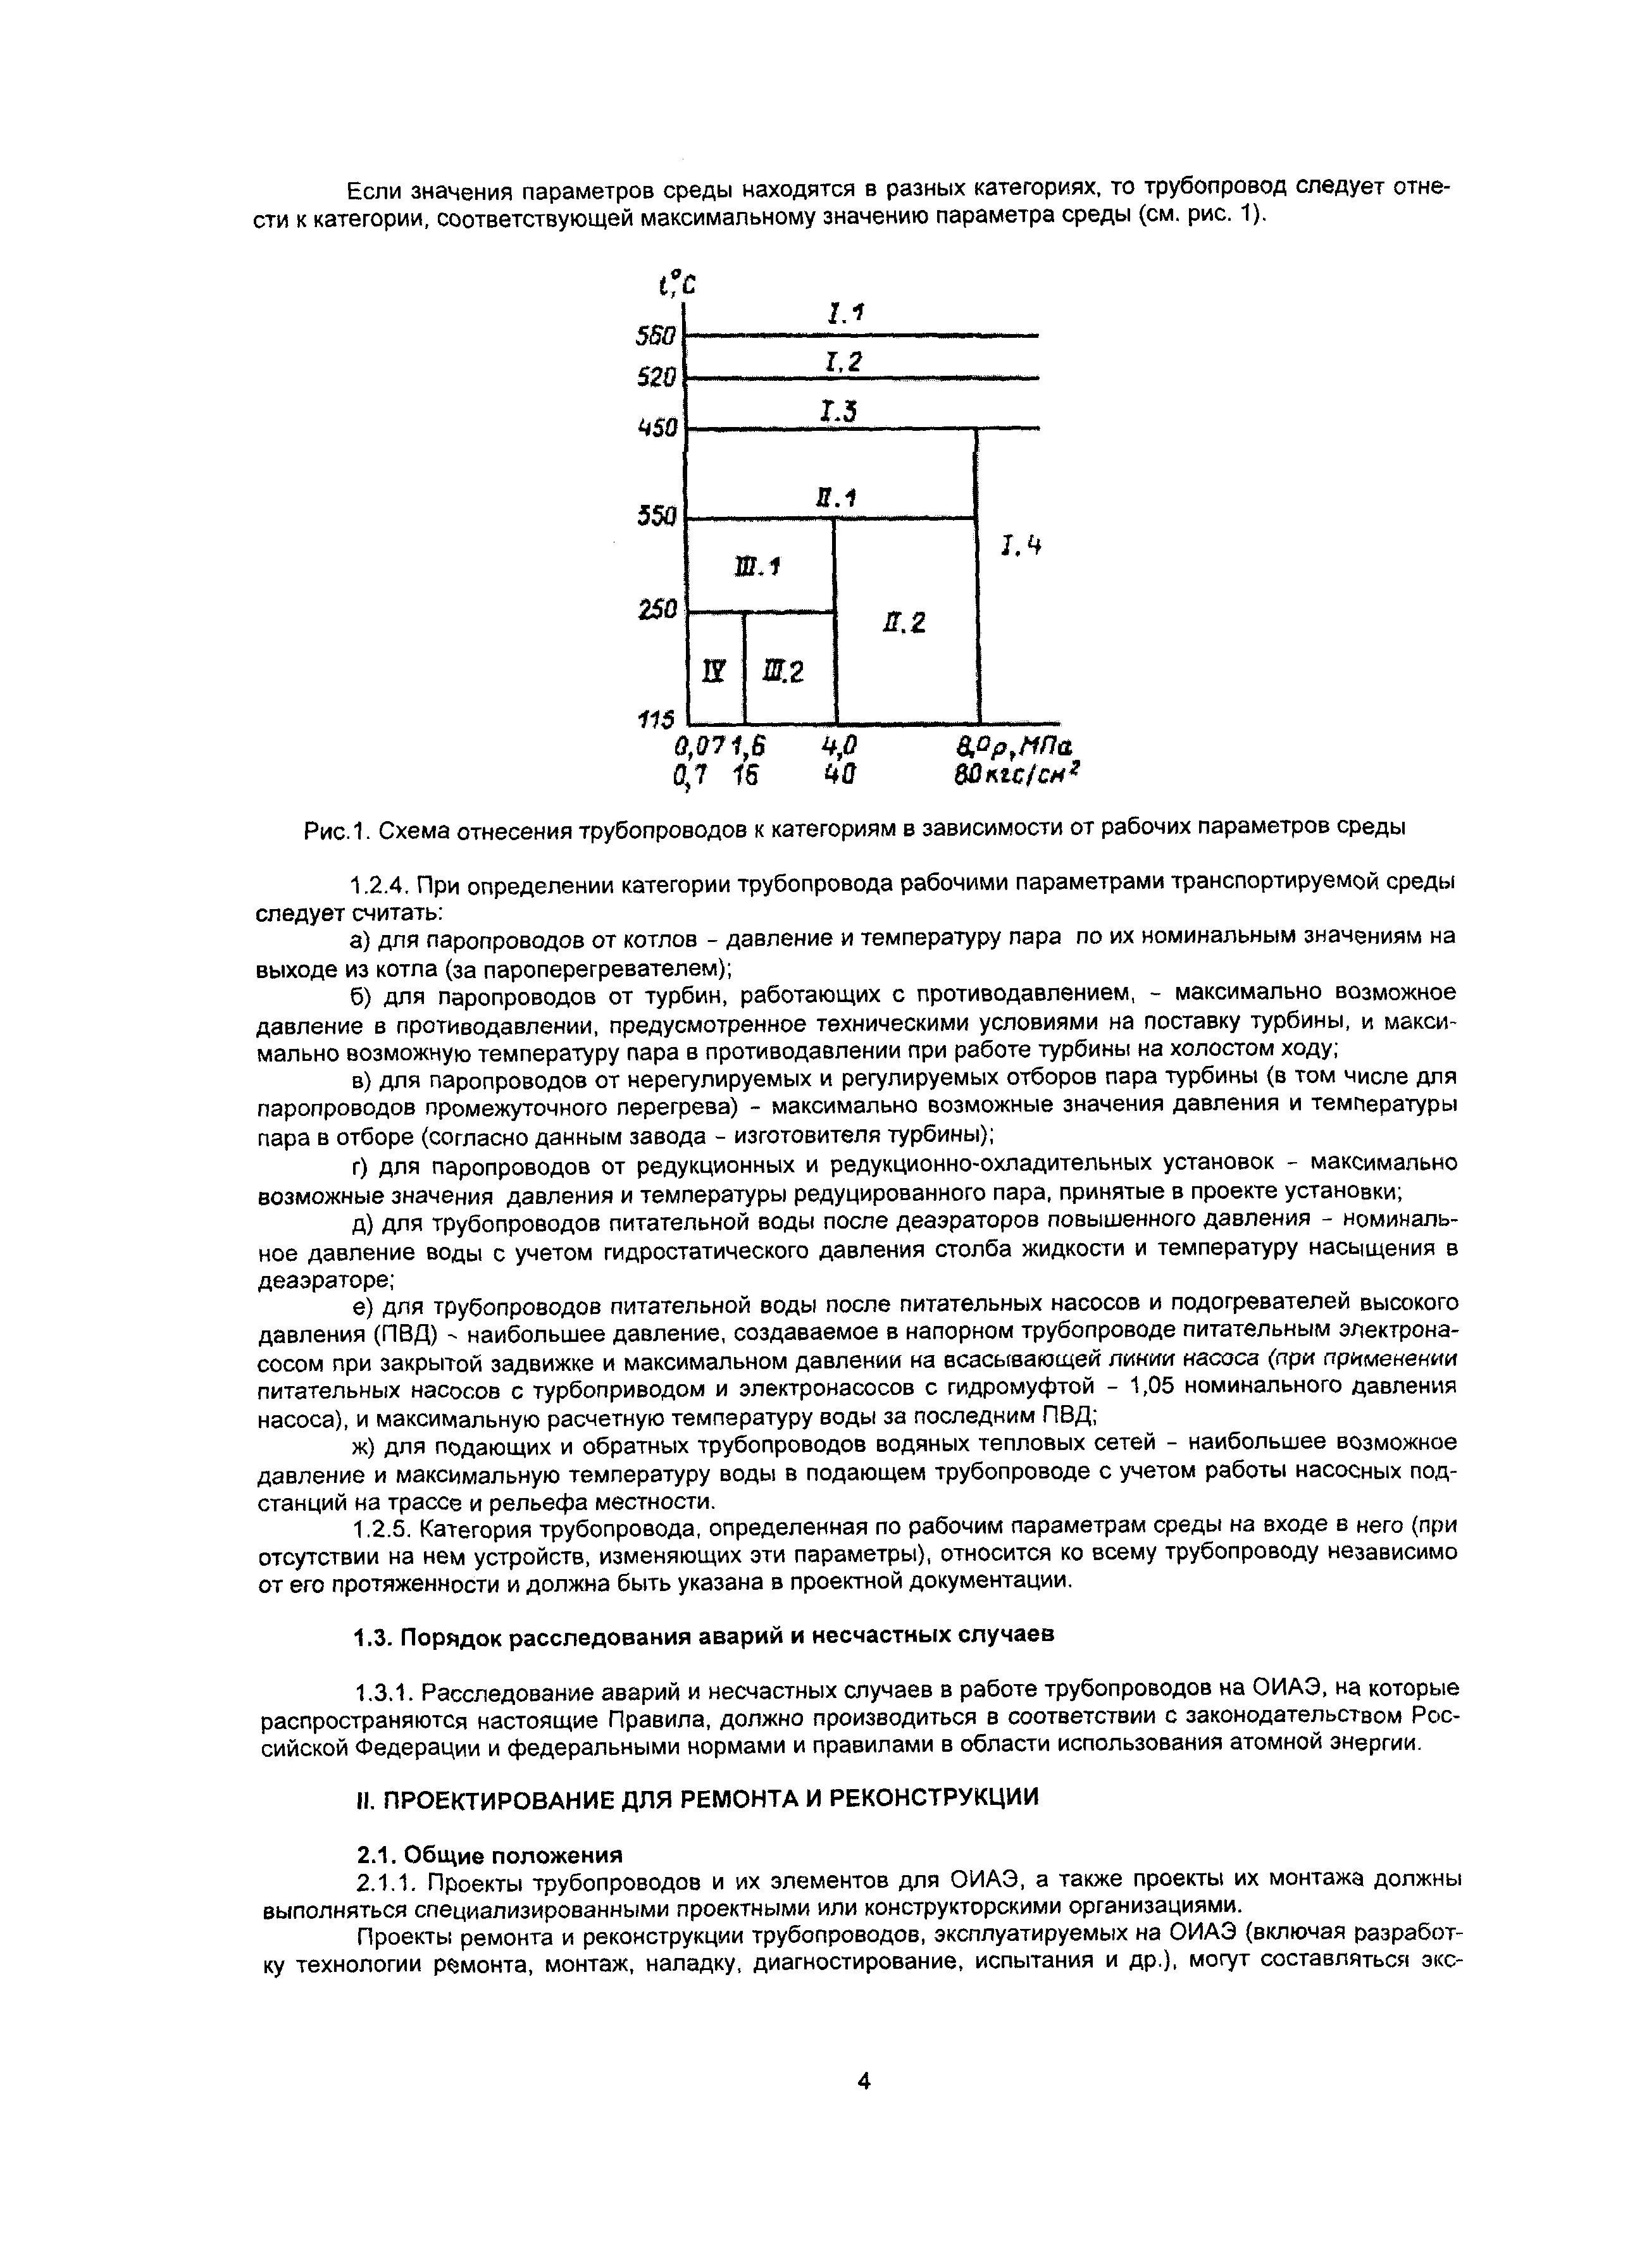 Инструкция по эксплуатации по эксплуатации трубопроводов пара и воды